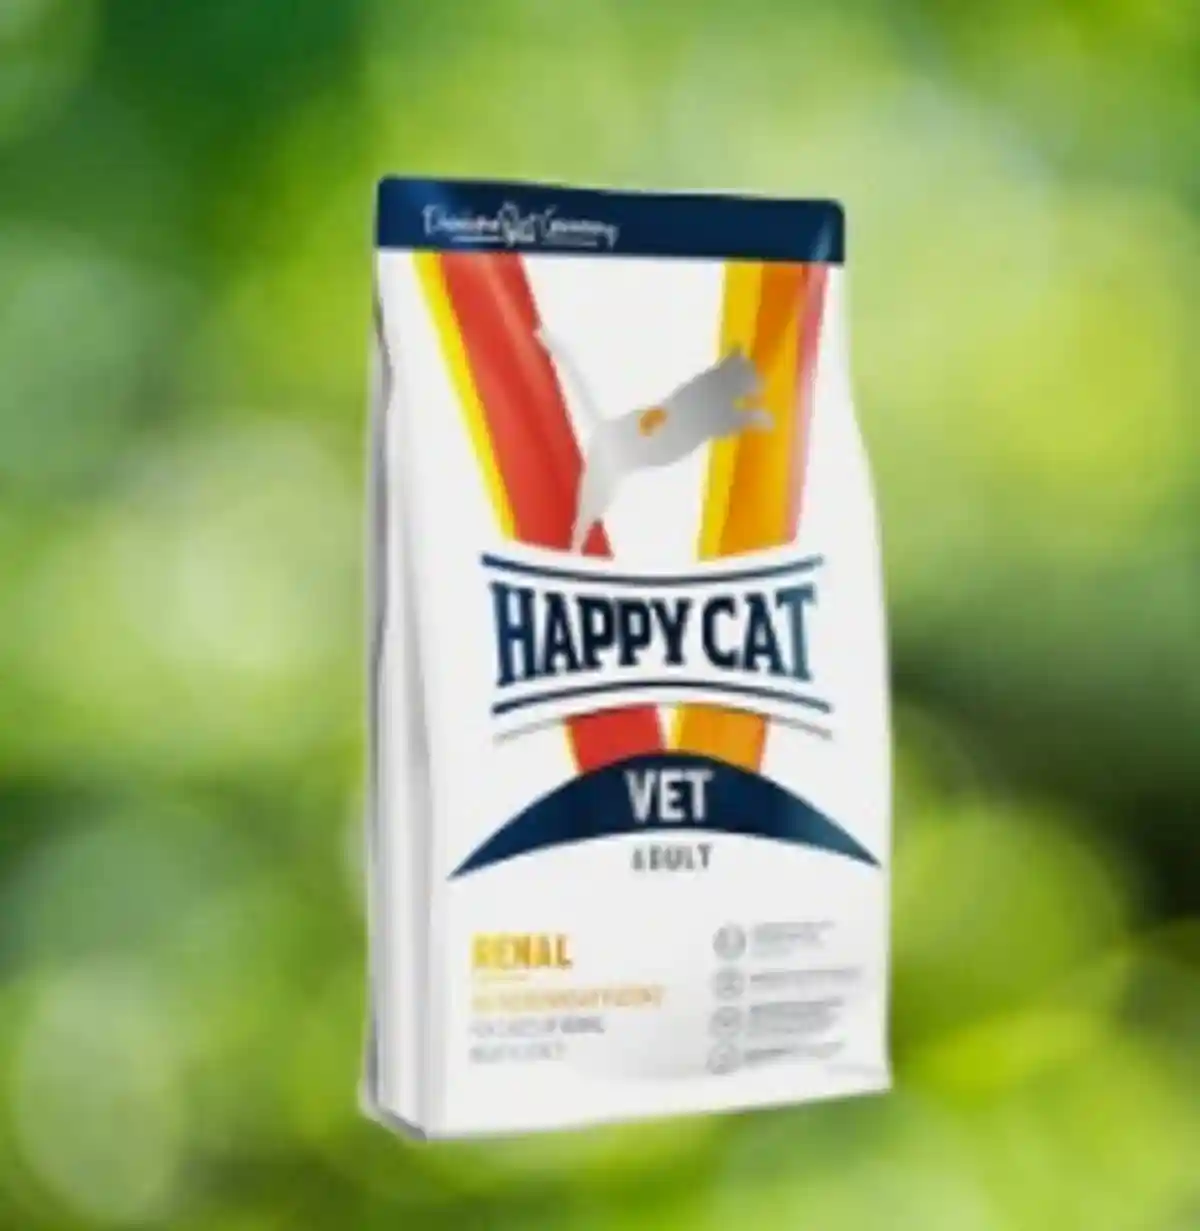 Отзыв корма для кошек в Германии: Happy Cat, VET Renal. Фото: aussiedlerbote.de